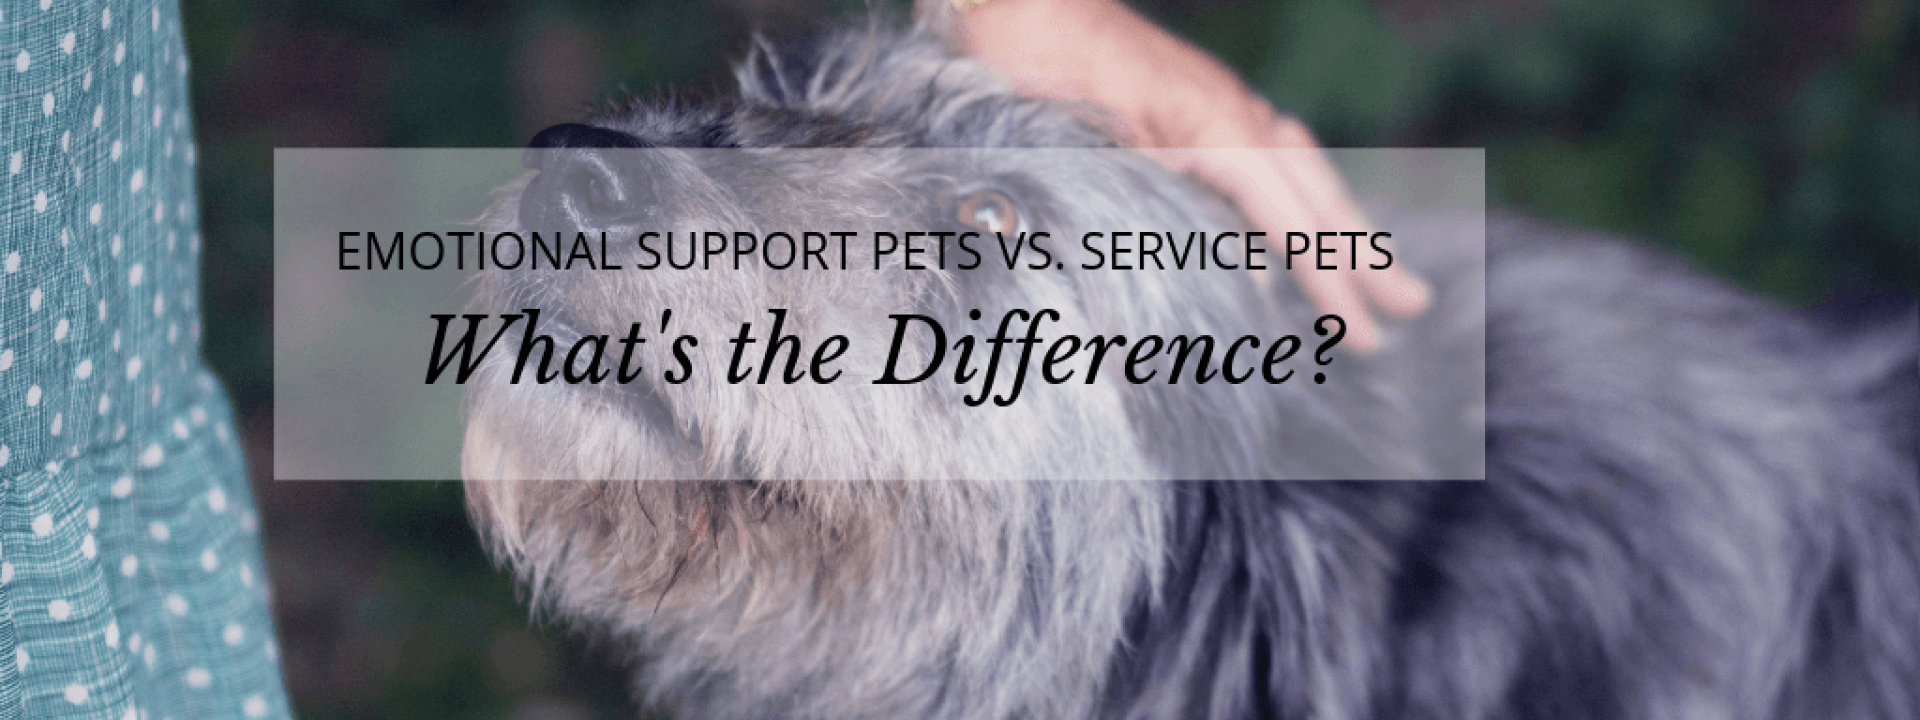 Service-pets-blog-header.png